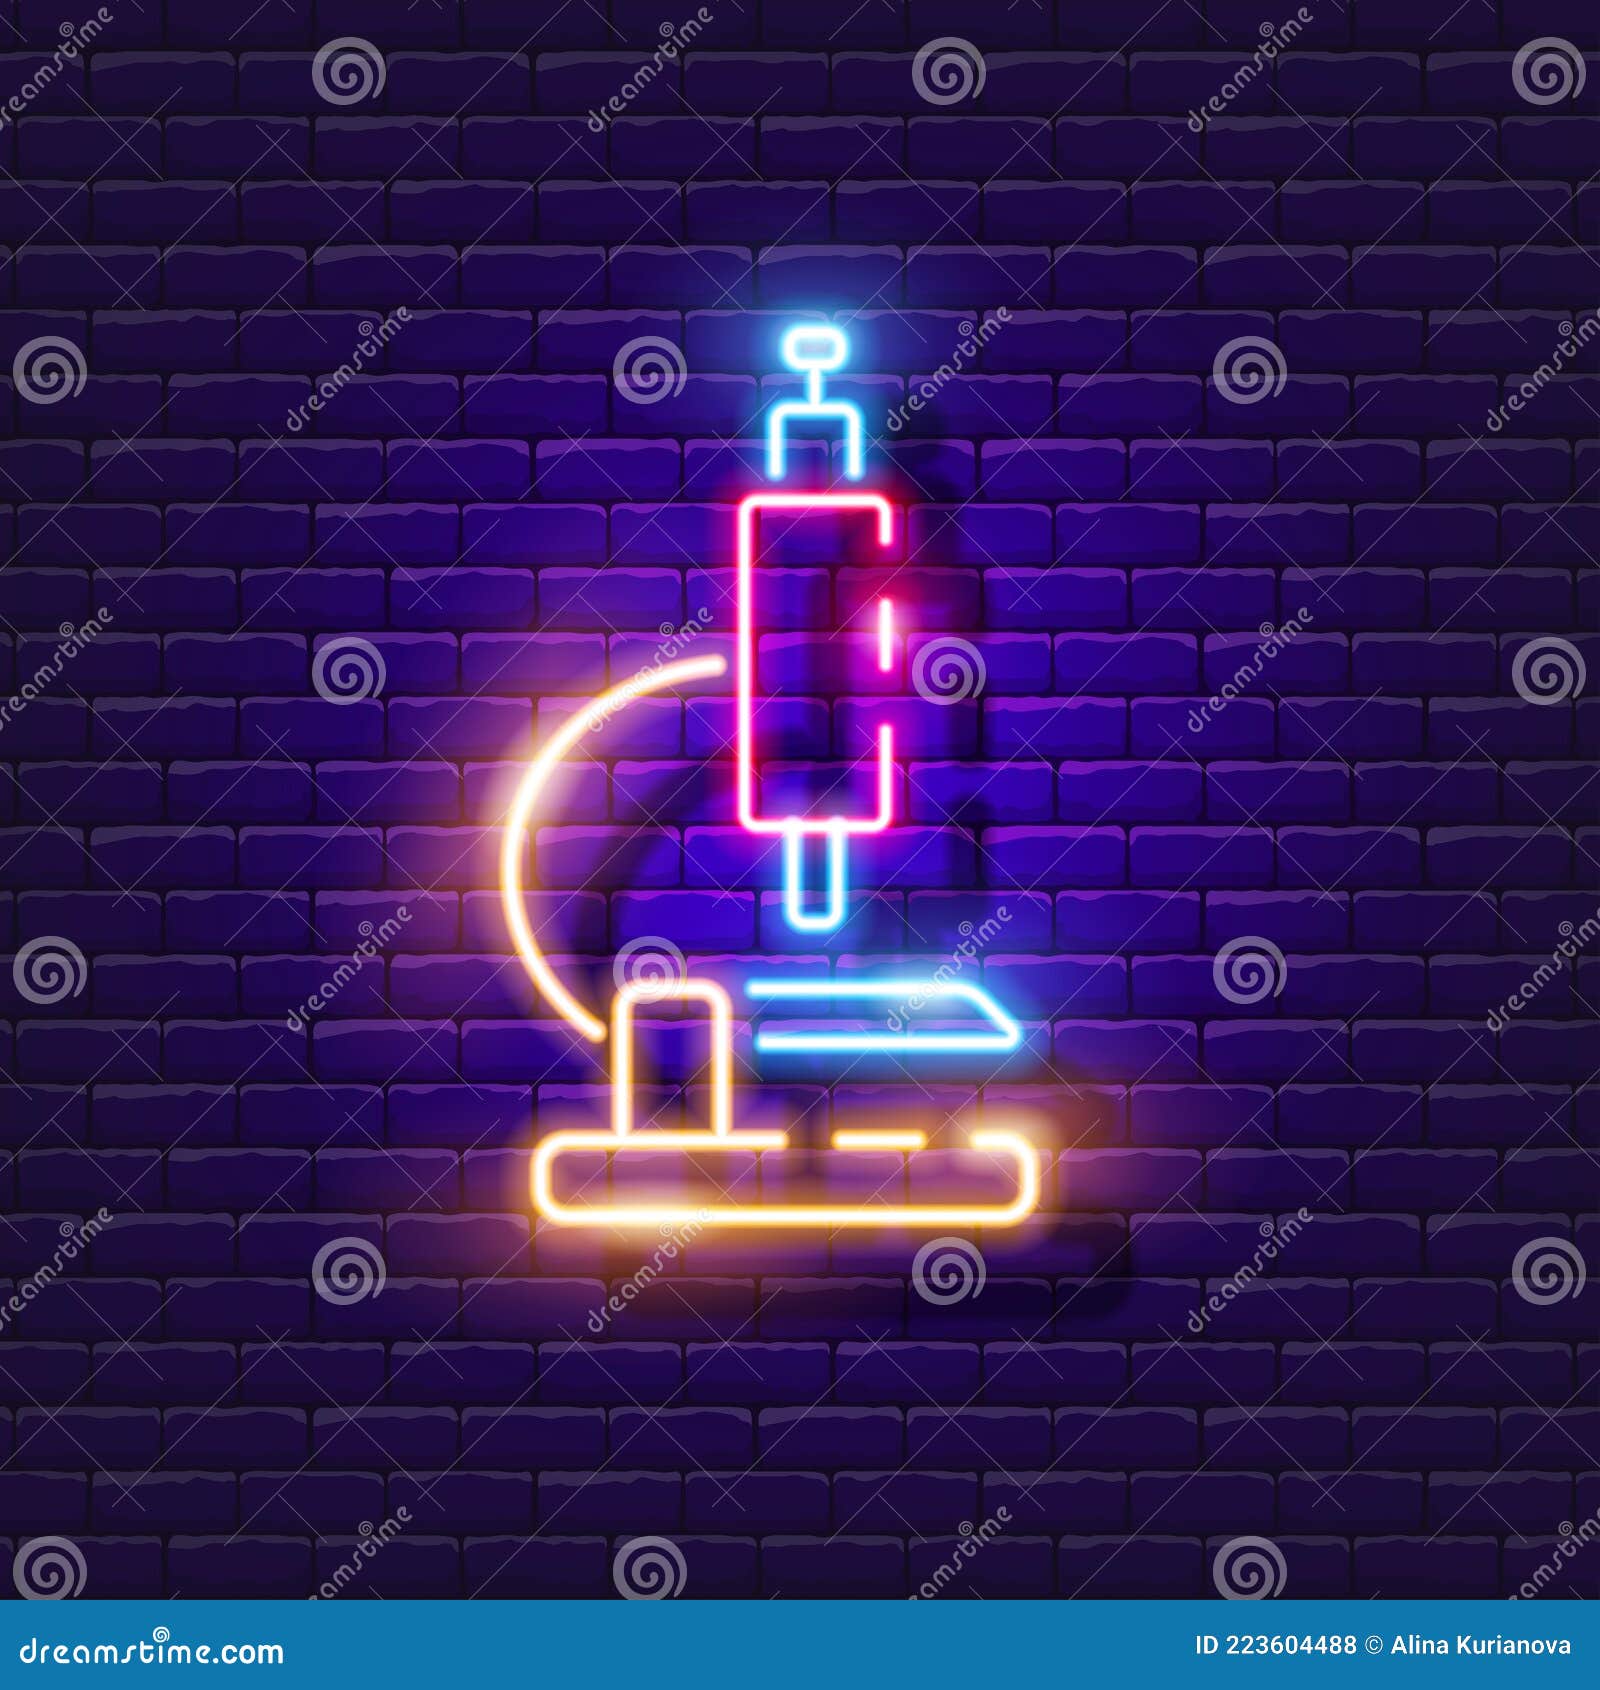 Illuminated Laboratory Neon Signage · Free Stock Photo